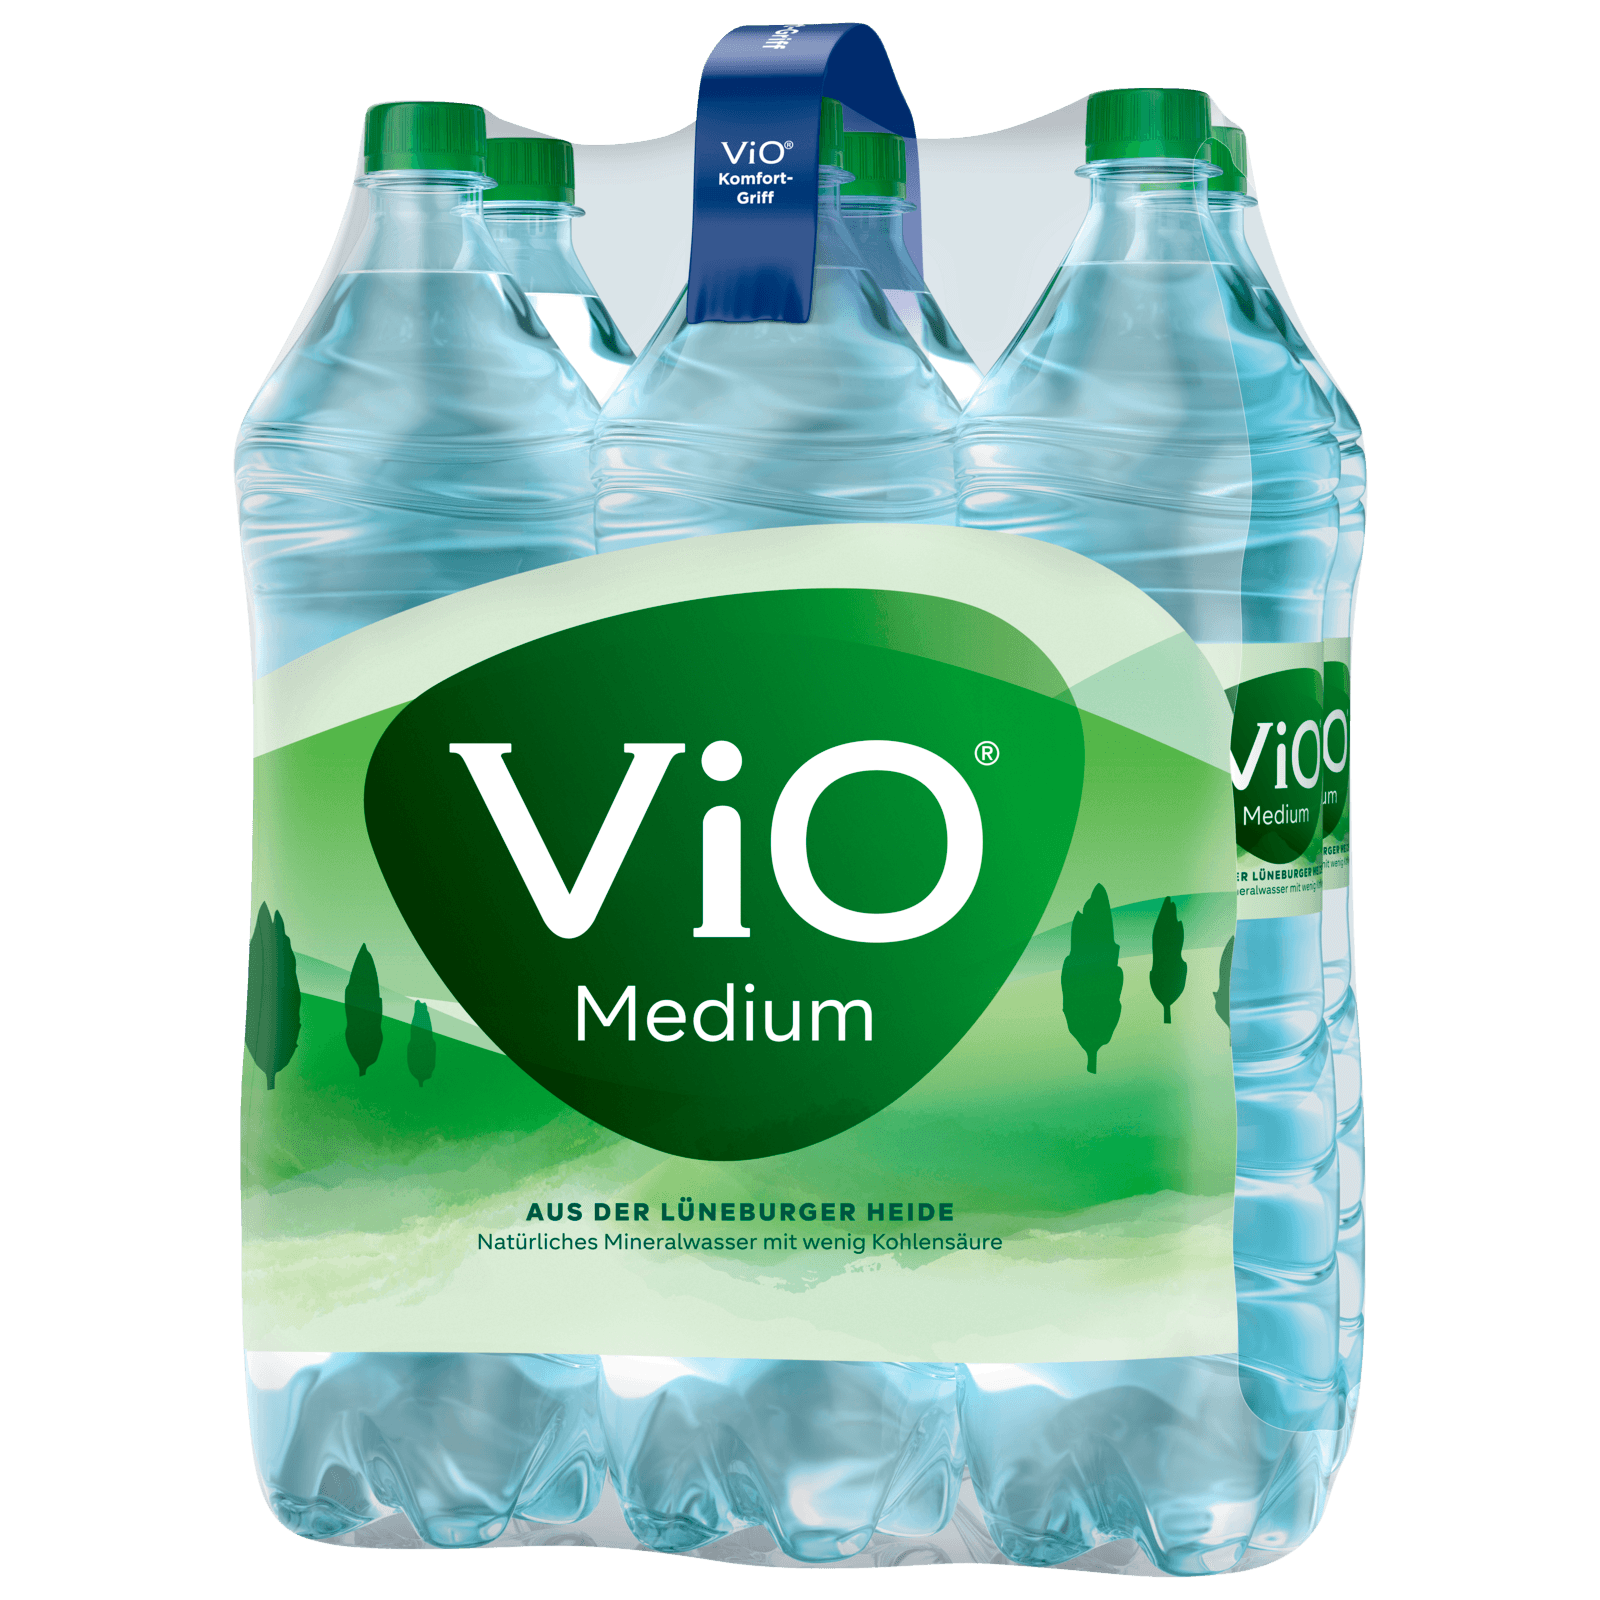 Vio Mineralwasser Medium 6x1,5l